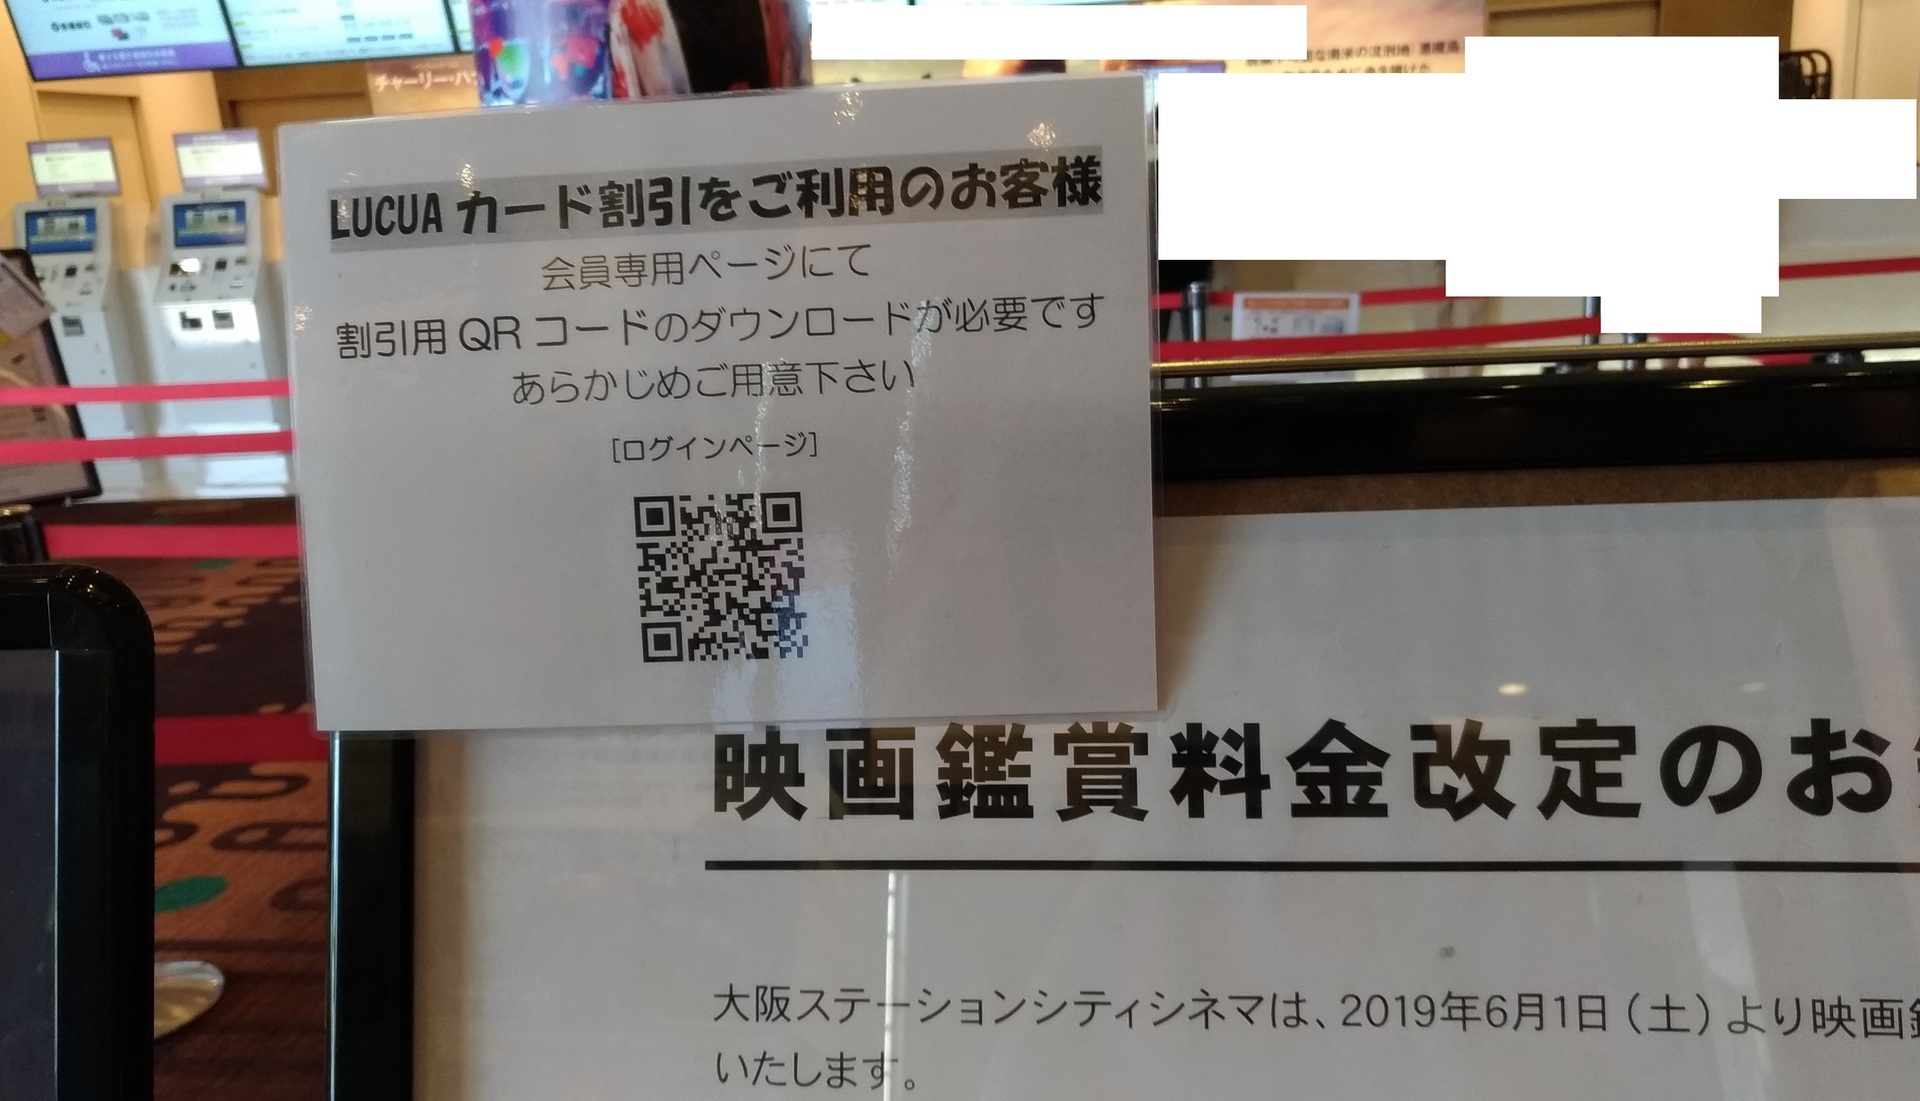 映画館値上げ 100円大阪ステーションシティシネマも1900円に Zenfone 2 Laserカメラ スマホで写真 スクリーンショットブログ